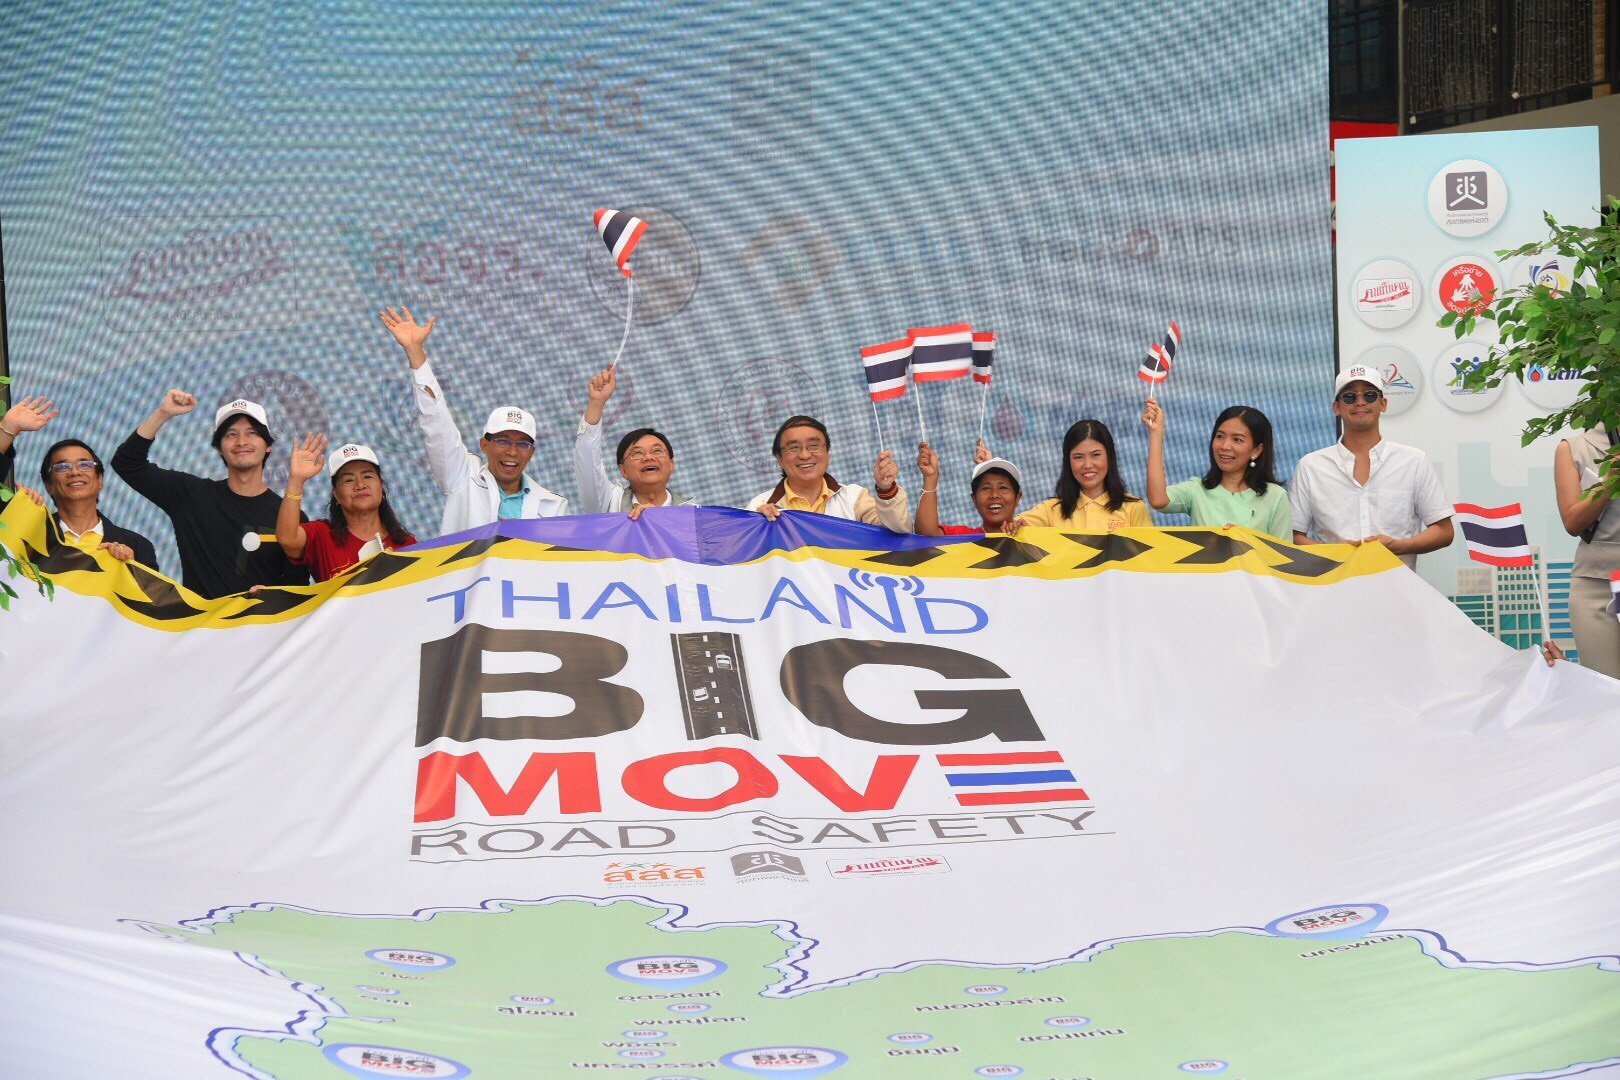 เปิดกิจกรรม “Thailand Big move Road Safety” รณรงค์ลดอุบัติเหตุ thaihealth